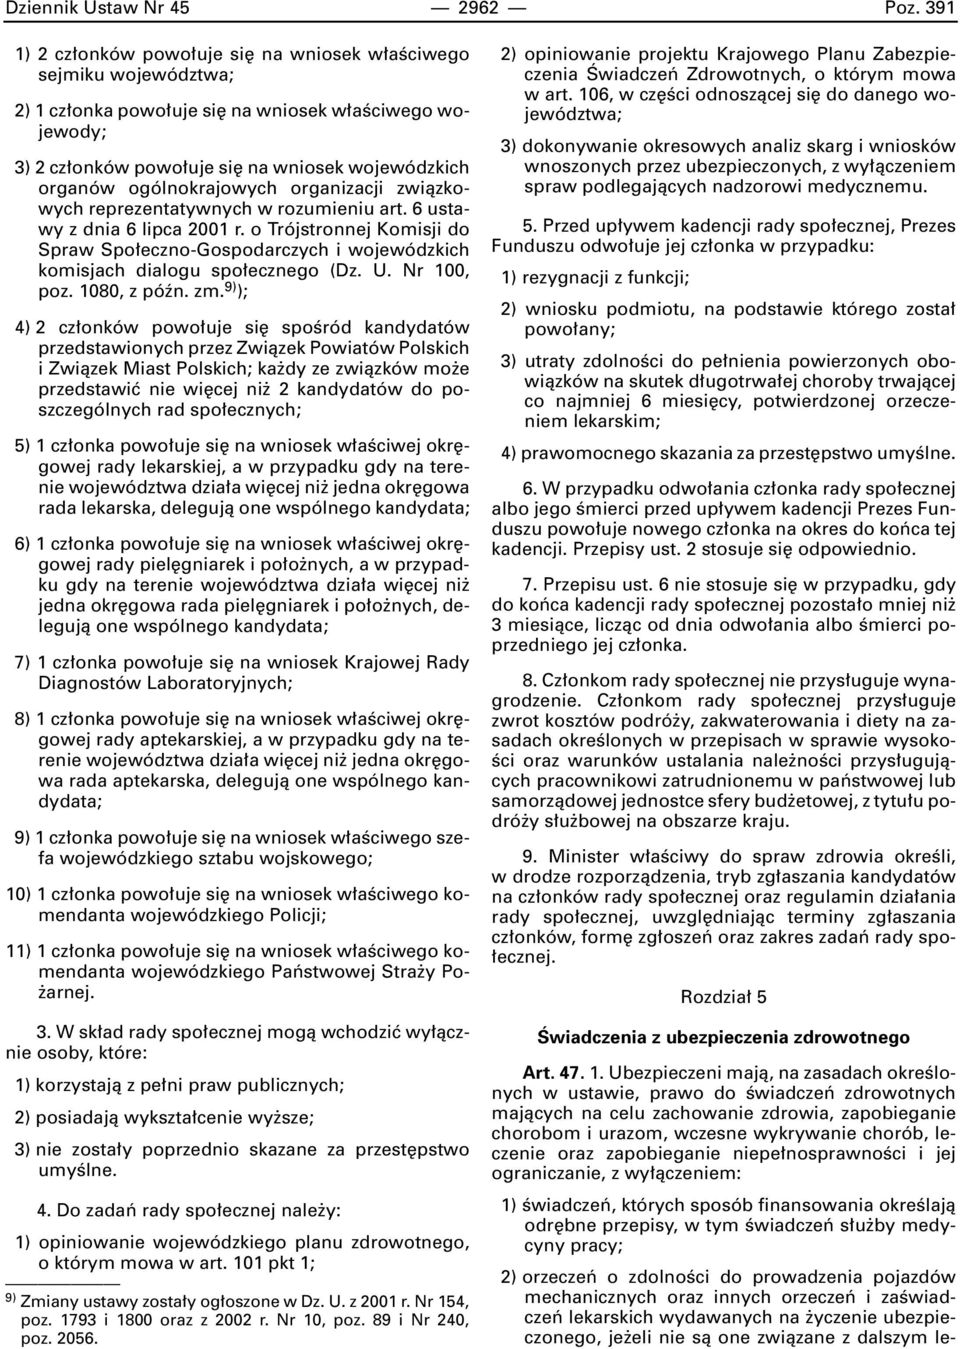 ogólnokrajowych organizacji zwiàzkowych reprezentatywnych w rozumieniu art. 6 ustawy z dnia 6 lipca 2001 r.